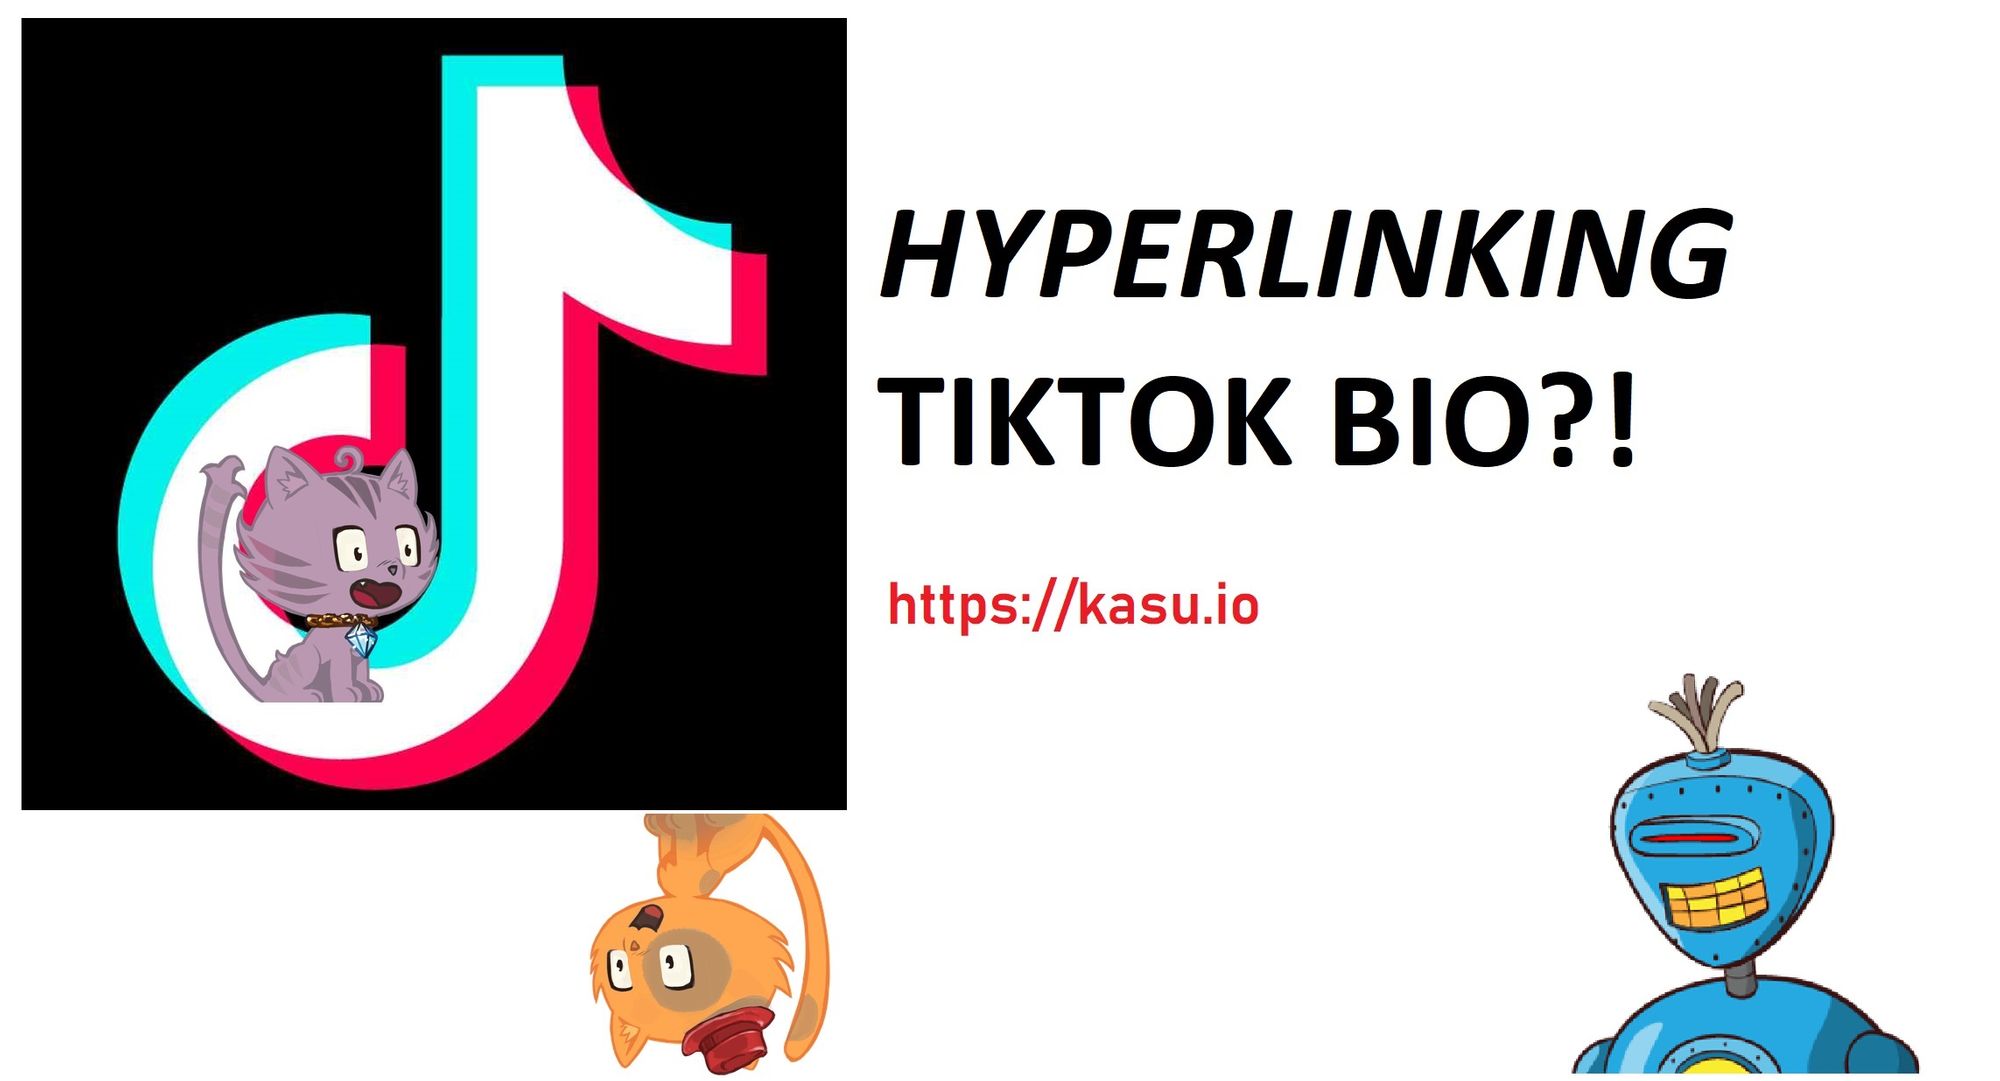 How to add hyperlink to your TikTok bio?